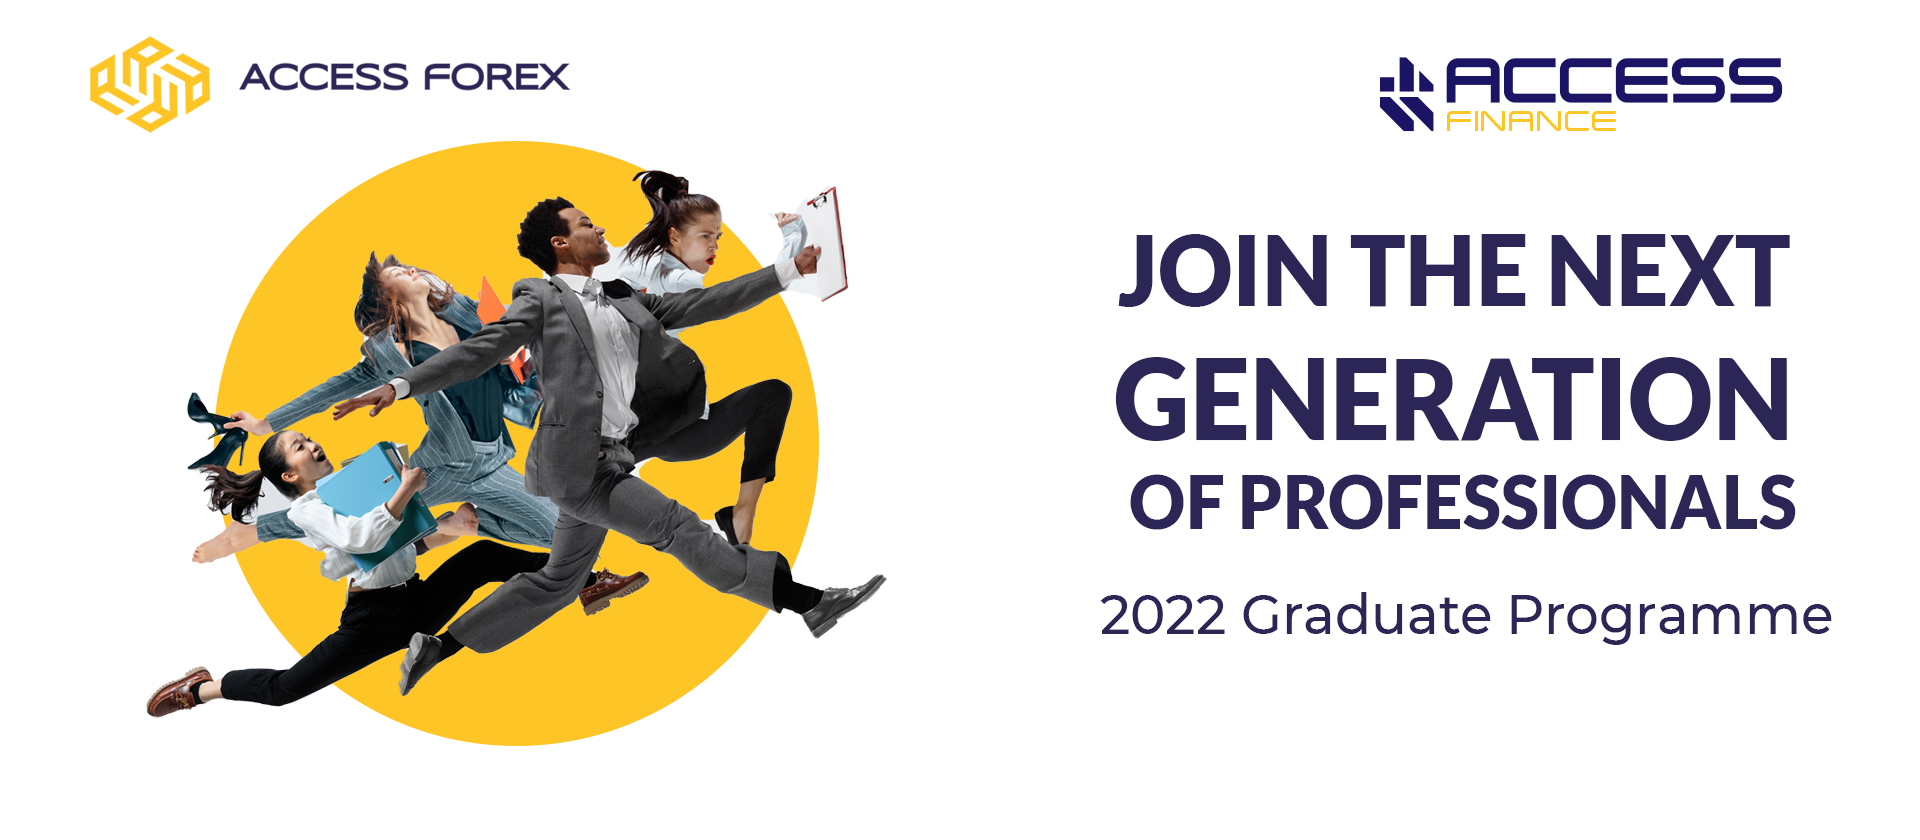 2022 Graduate Programme